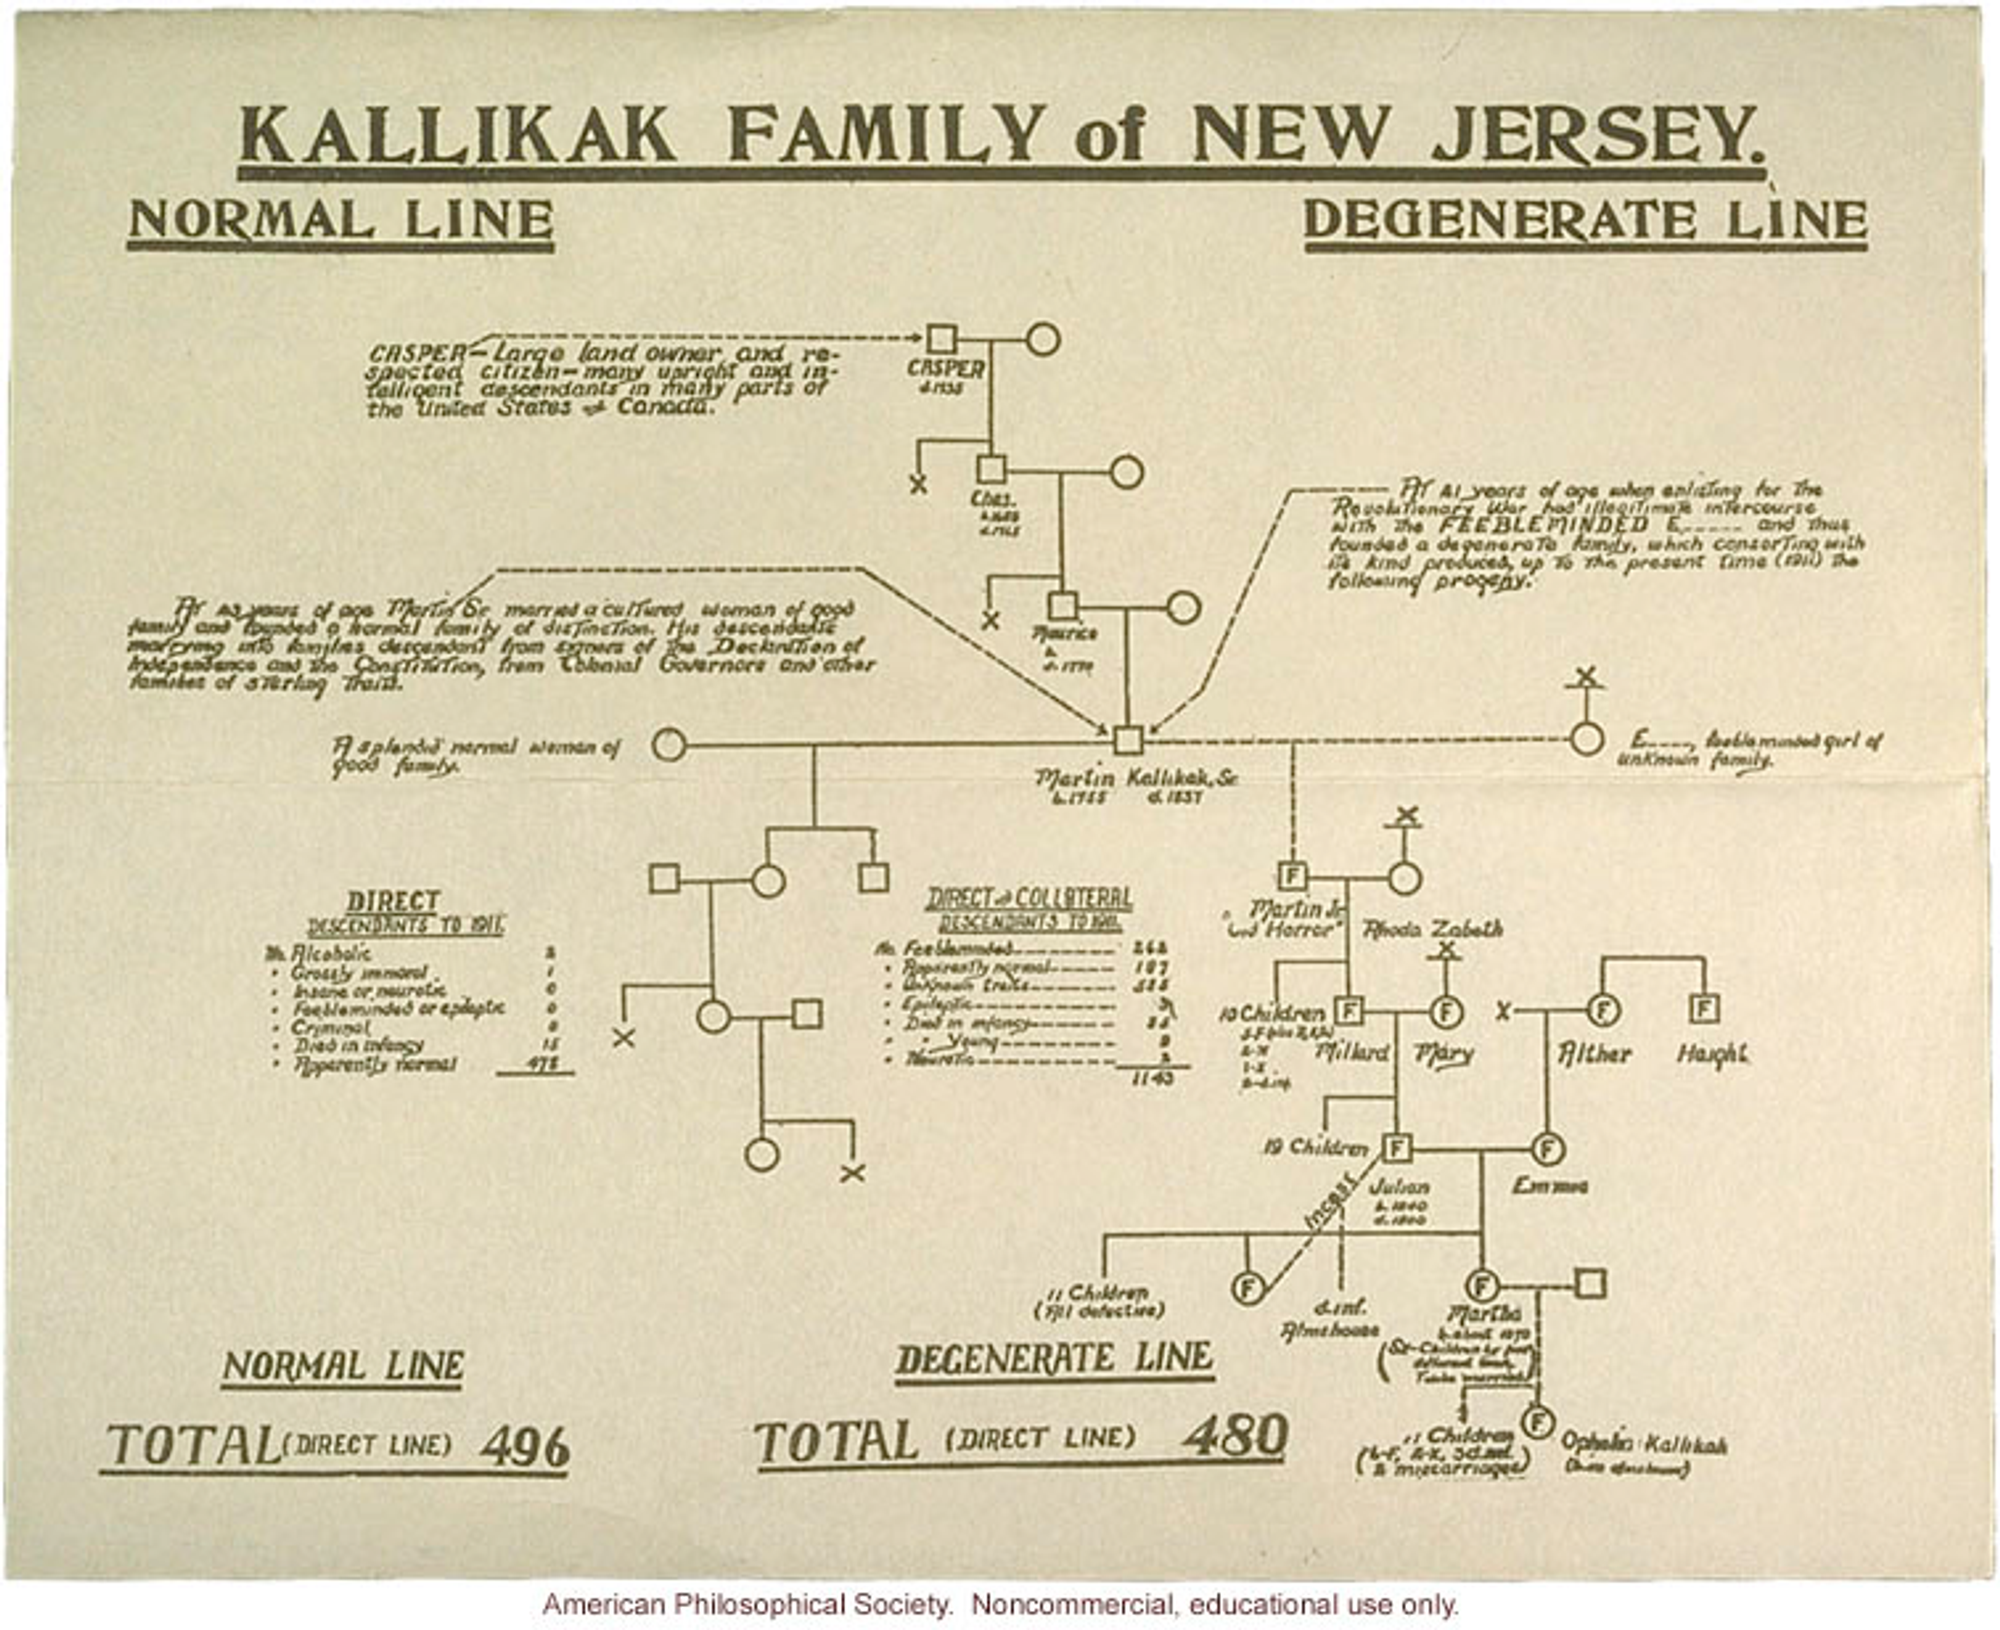 L’arbre généalogique de la famille Kallikak, publié en 1912, qui prétend expliquer que l’état de Déborah Kalillkak est lié à une union “immorale” il y a quatre générations.